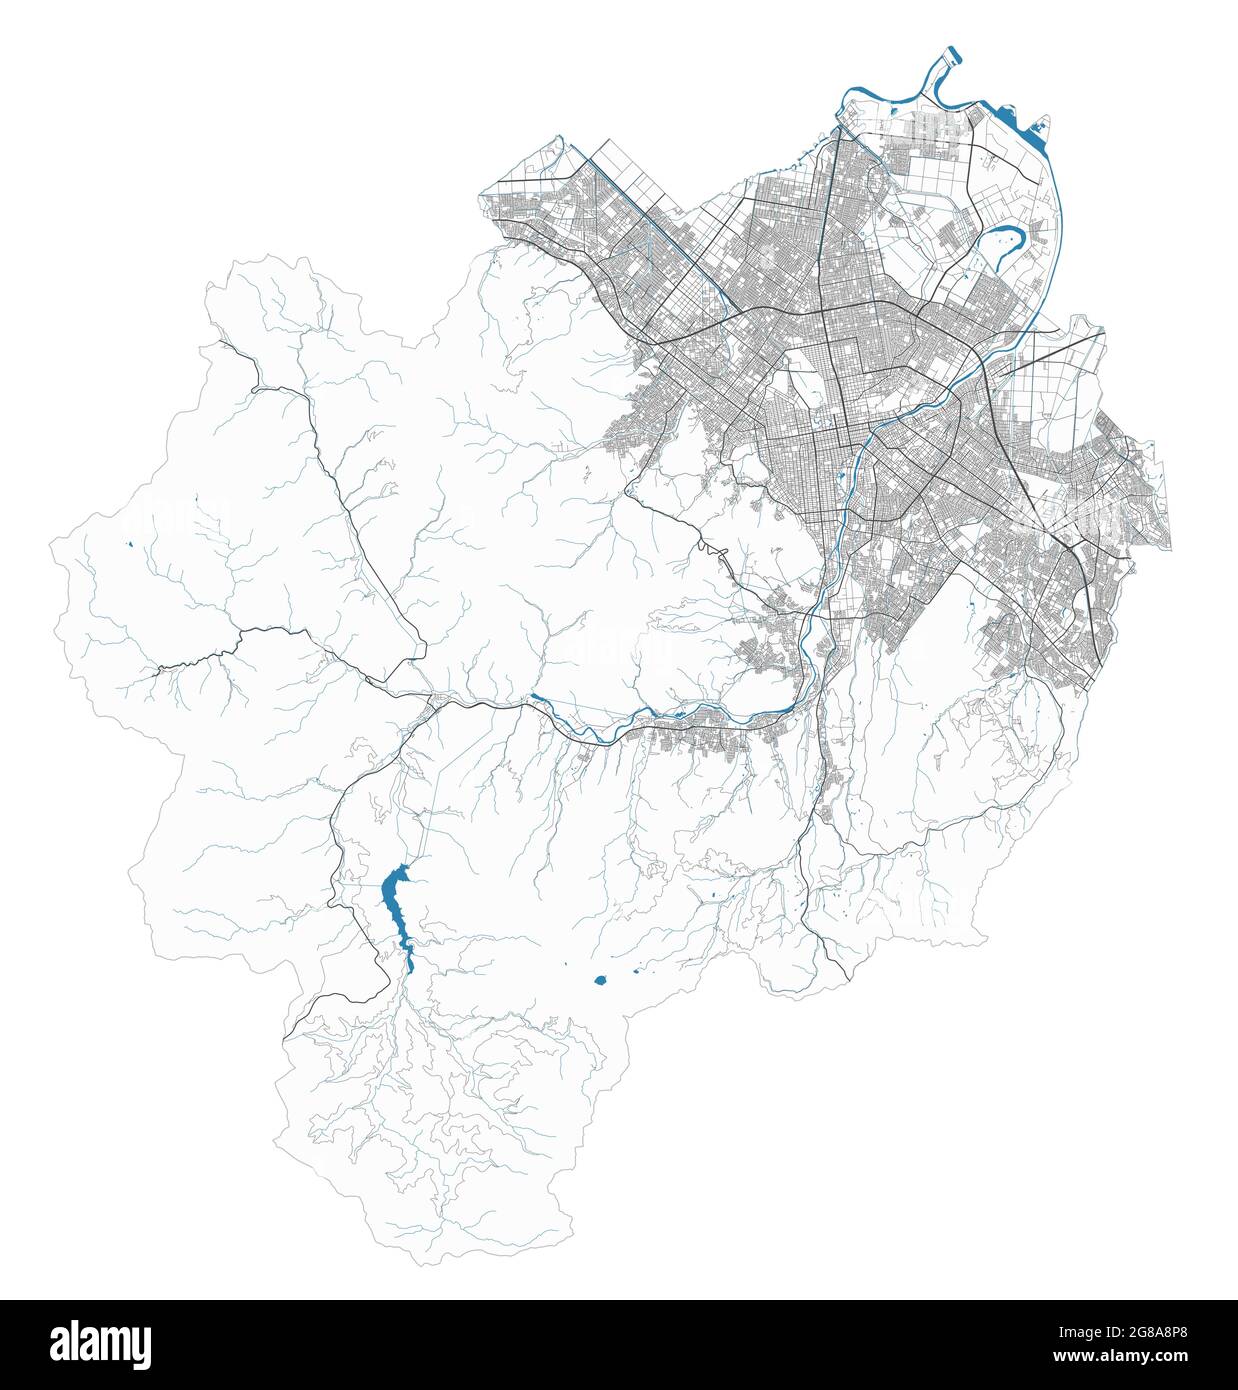 Mappa della città di Sapporo. Mappa dettagliata area amministrativa, panorama terrestre. Illustrazione vettoriale priva di royalty. Mappa con autostrade, strade, fiumi. Touri Illustrazione Vettoriale